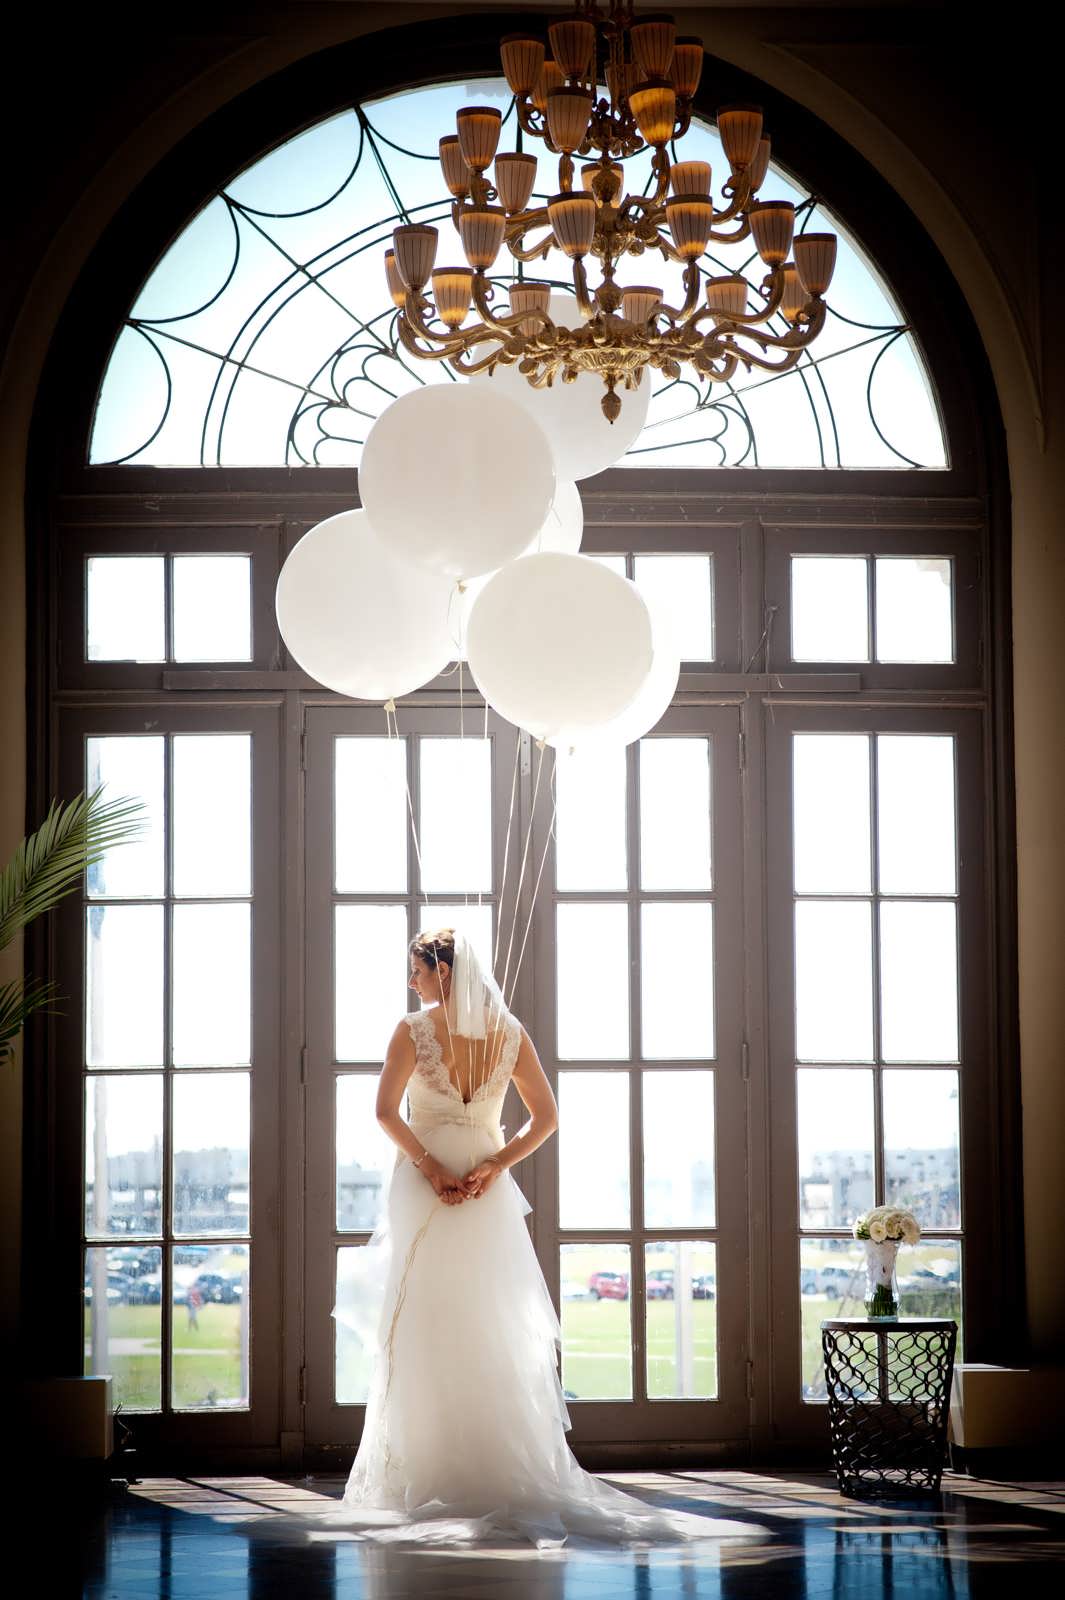 AsburyPark-Bride-Wedding-Photography